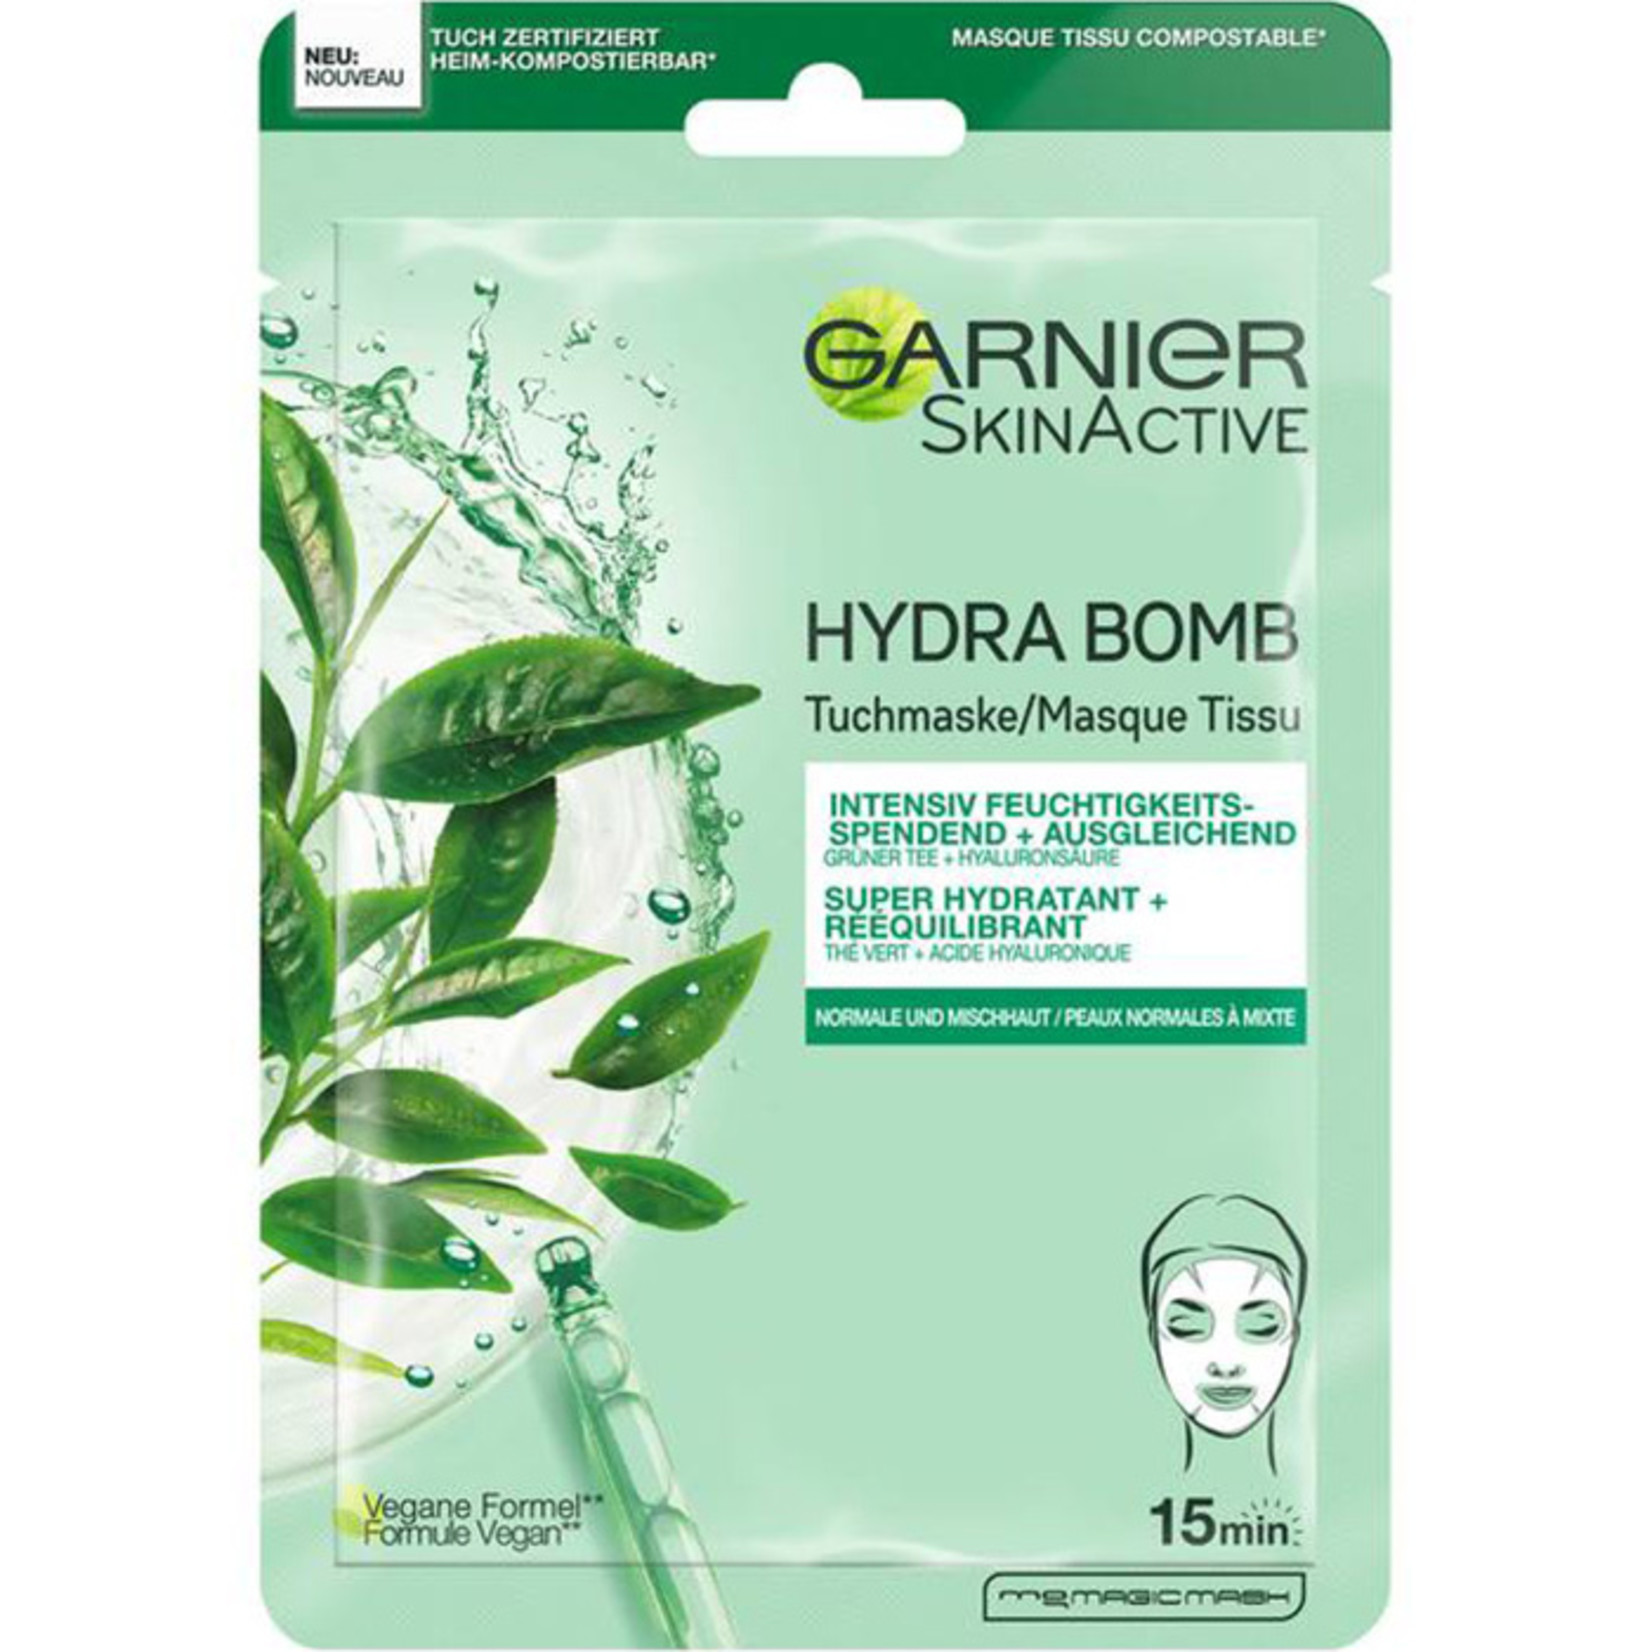 Garnier SkinActive Hydra Bomb Sheet Mask Green Tea